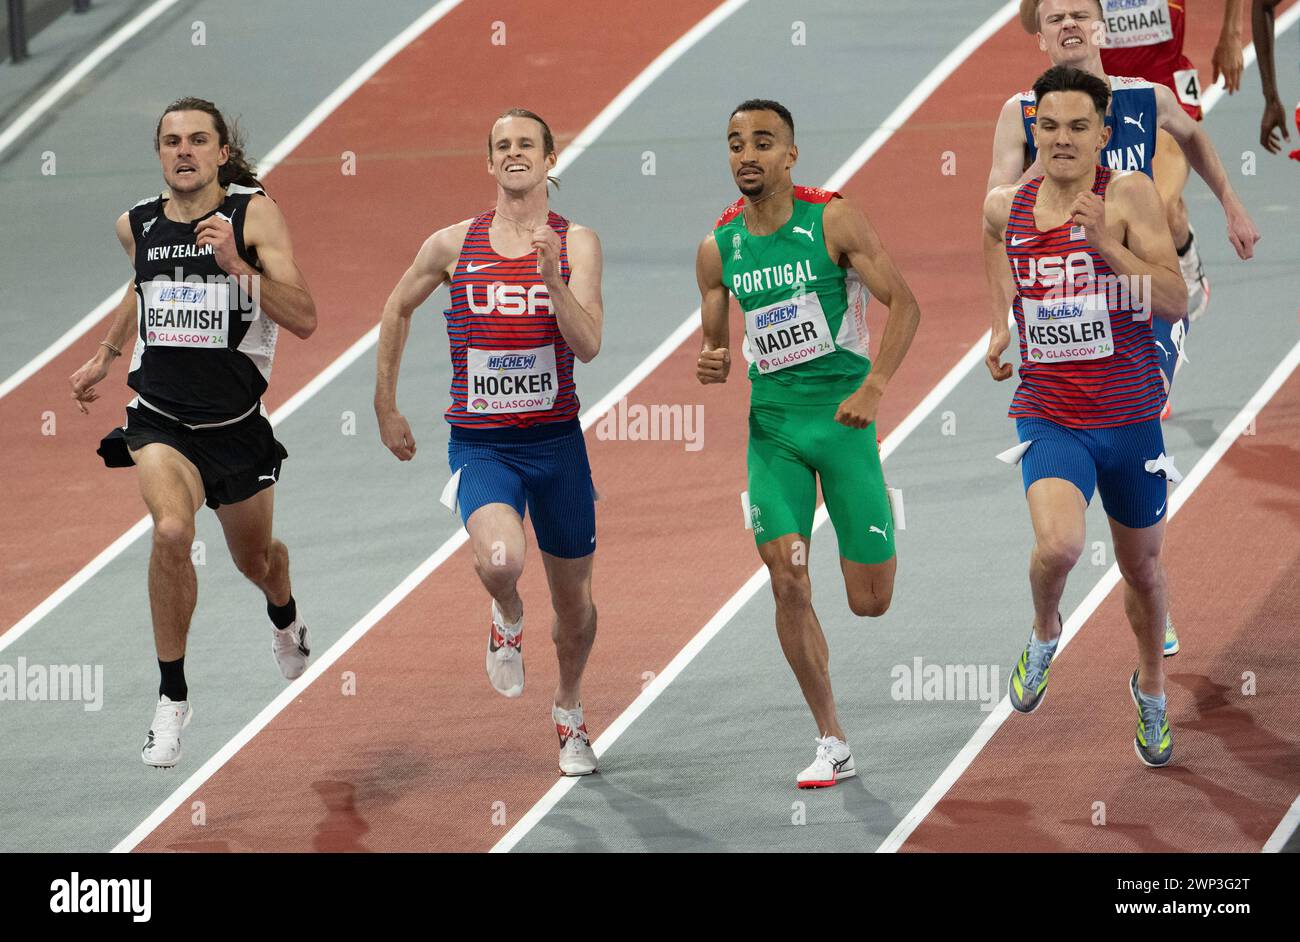 Geordie Beamish aus Neuseeland tritt an Cole Hocker (USA), Isaac Nader (Portugal) und Hobbs Kessler (USA) vorbei und gewinnt das 1500-m-Herrenfinale in der Welt Stockfoto